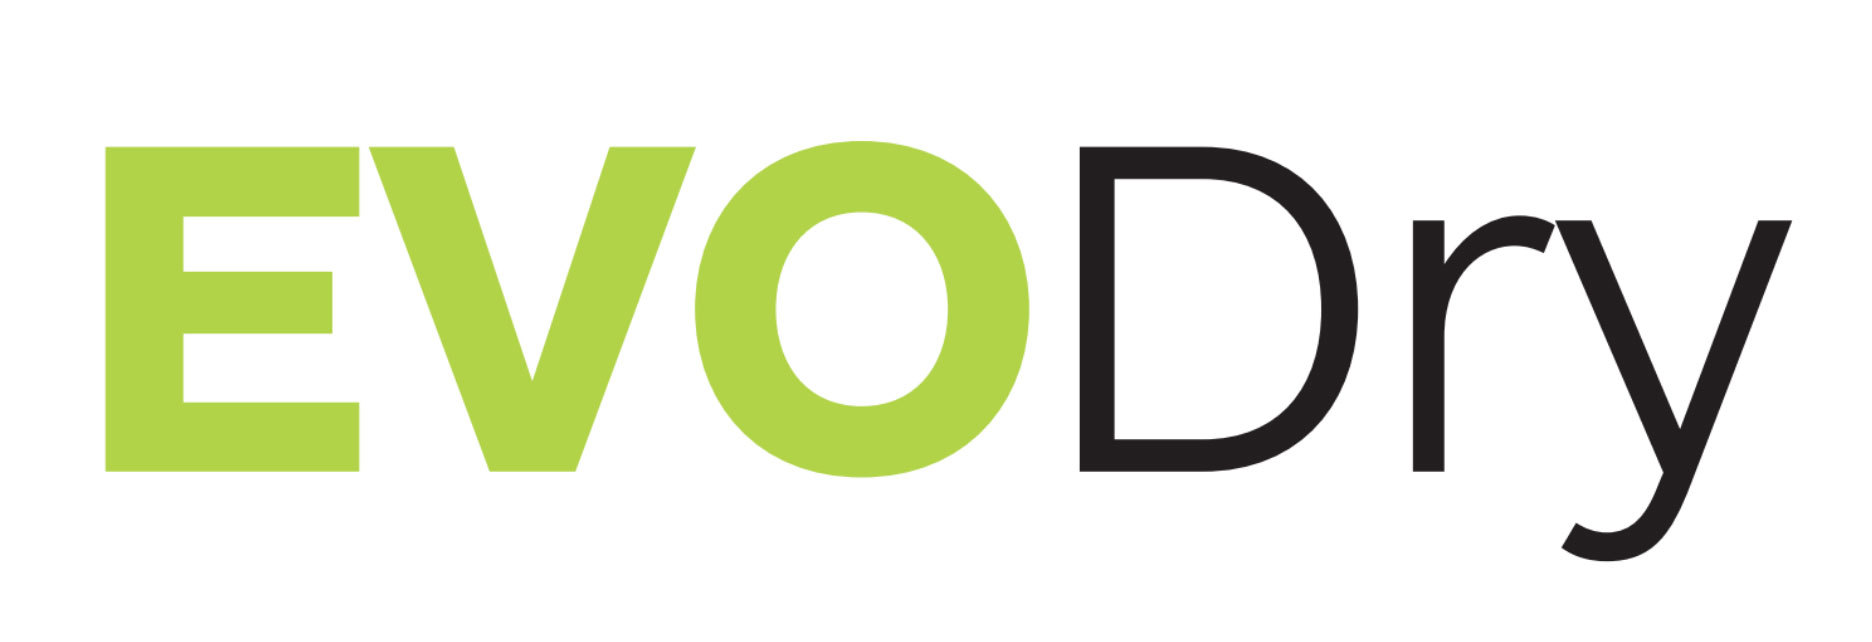 Modal_Logo